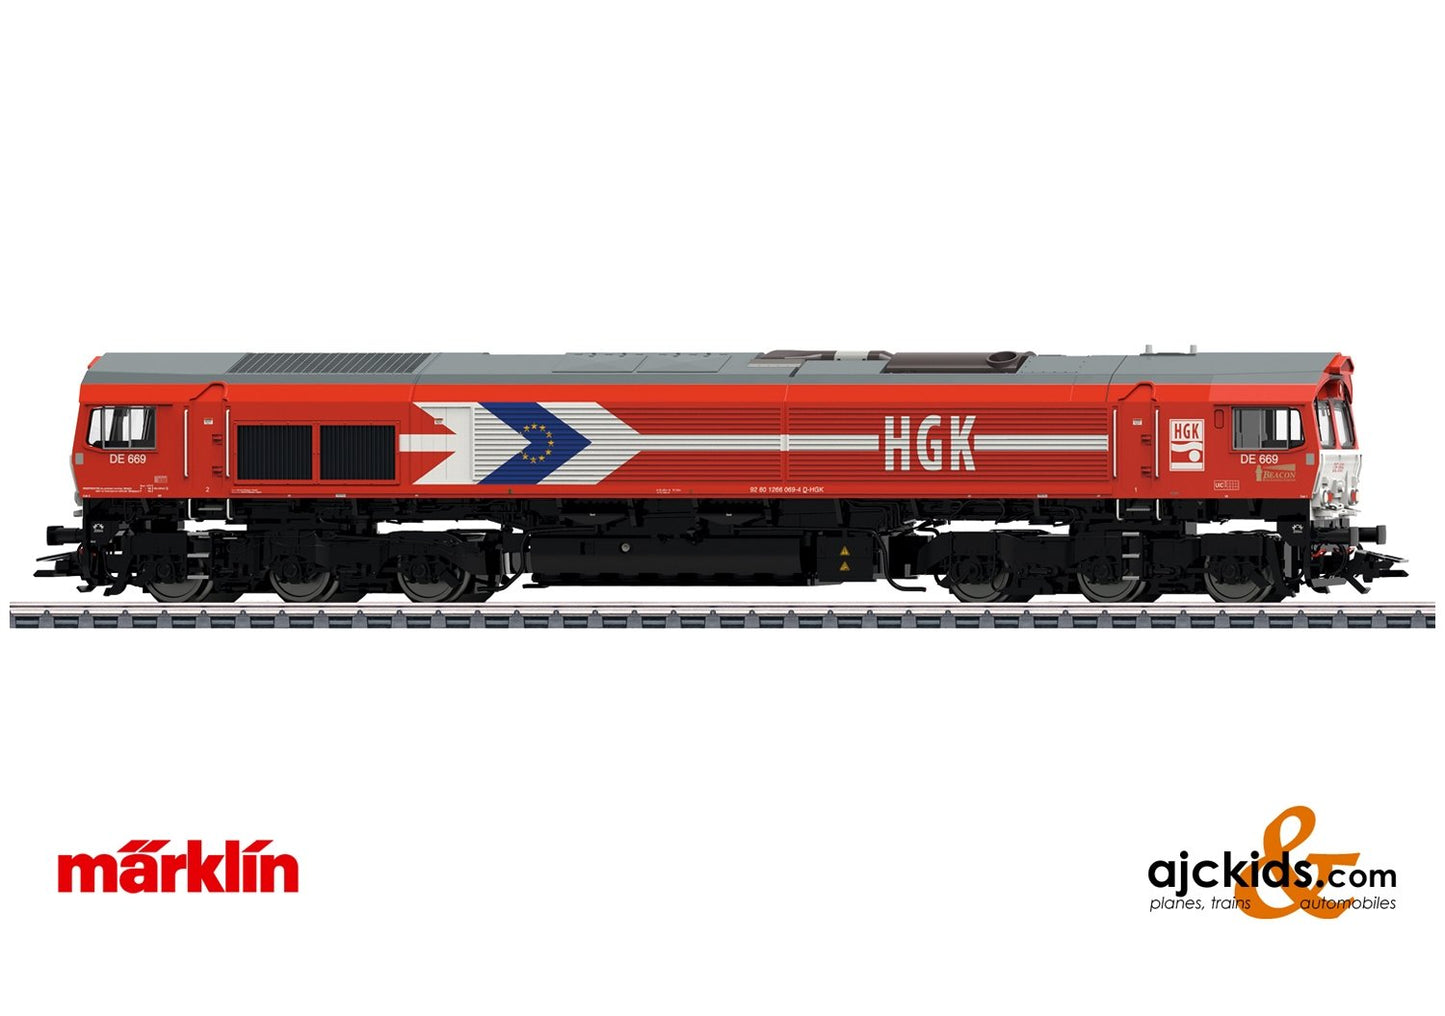 Marklin 39060 - Class 66 Diesel Locomotive HGK